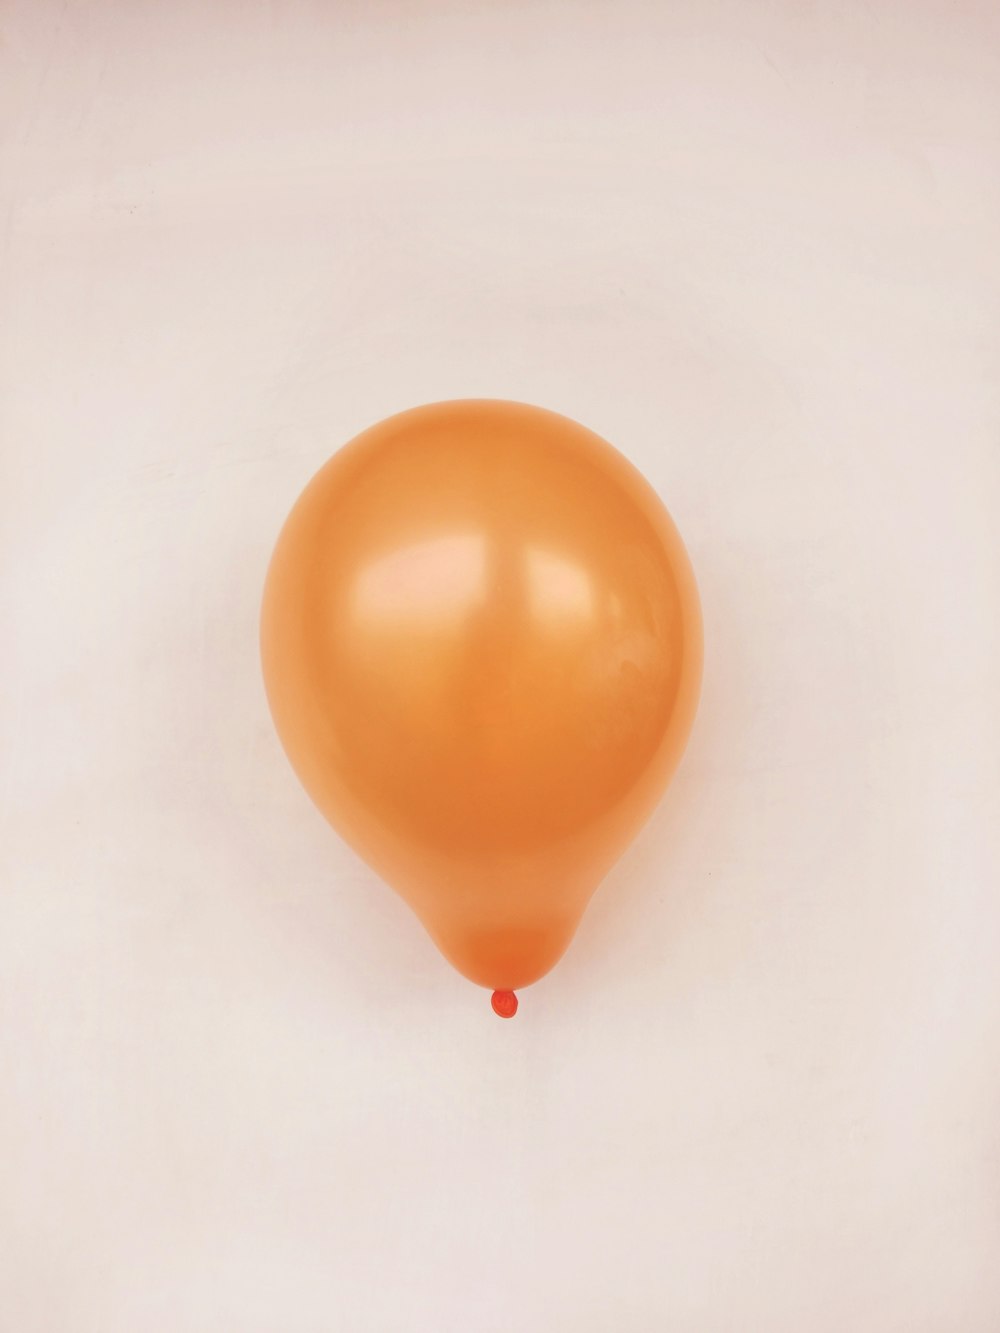 globo naranja sobre superficie blanca